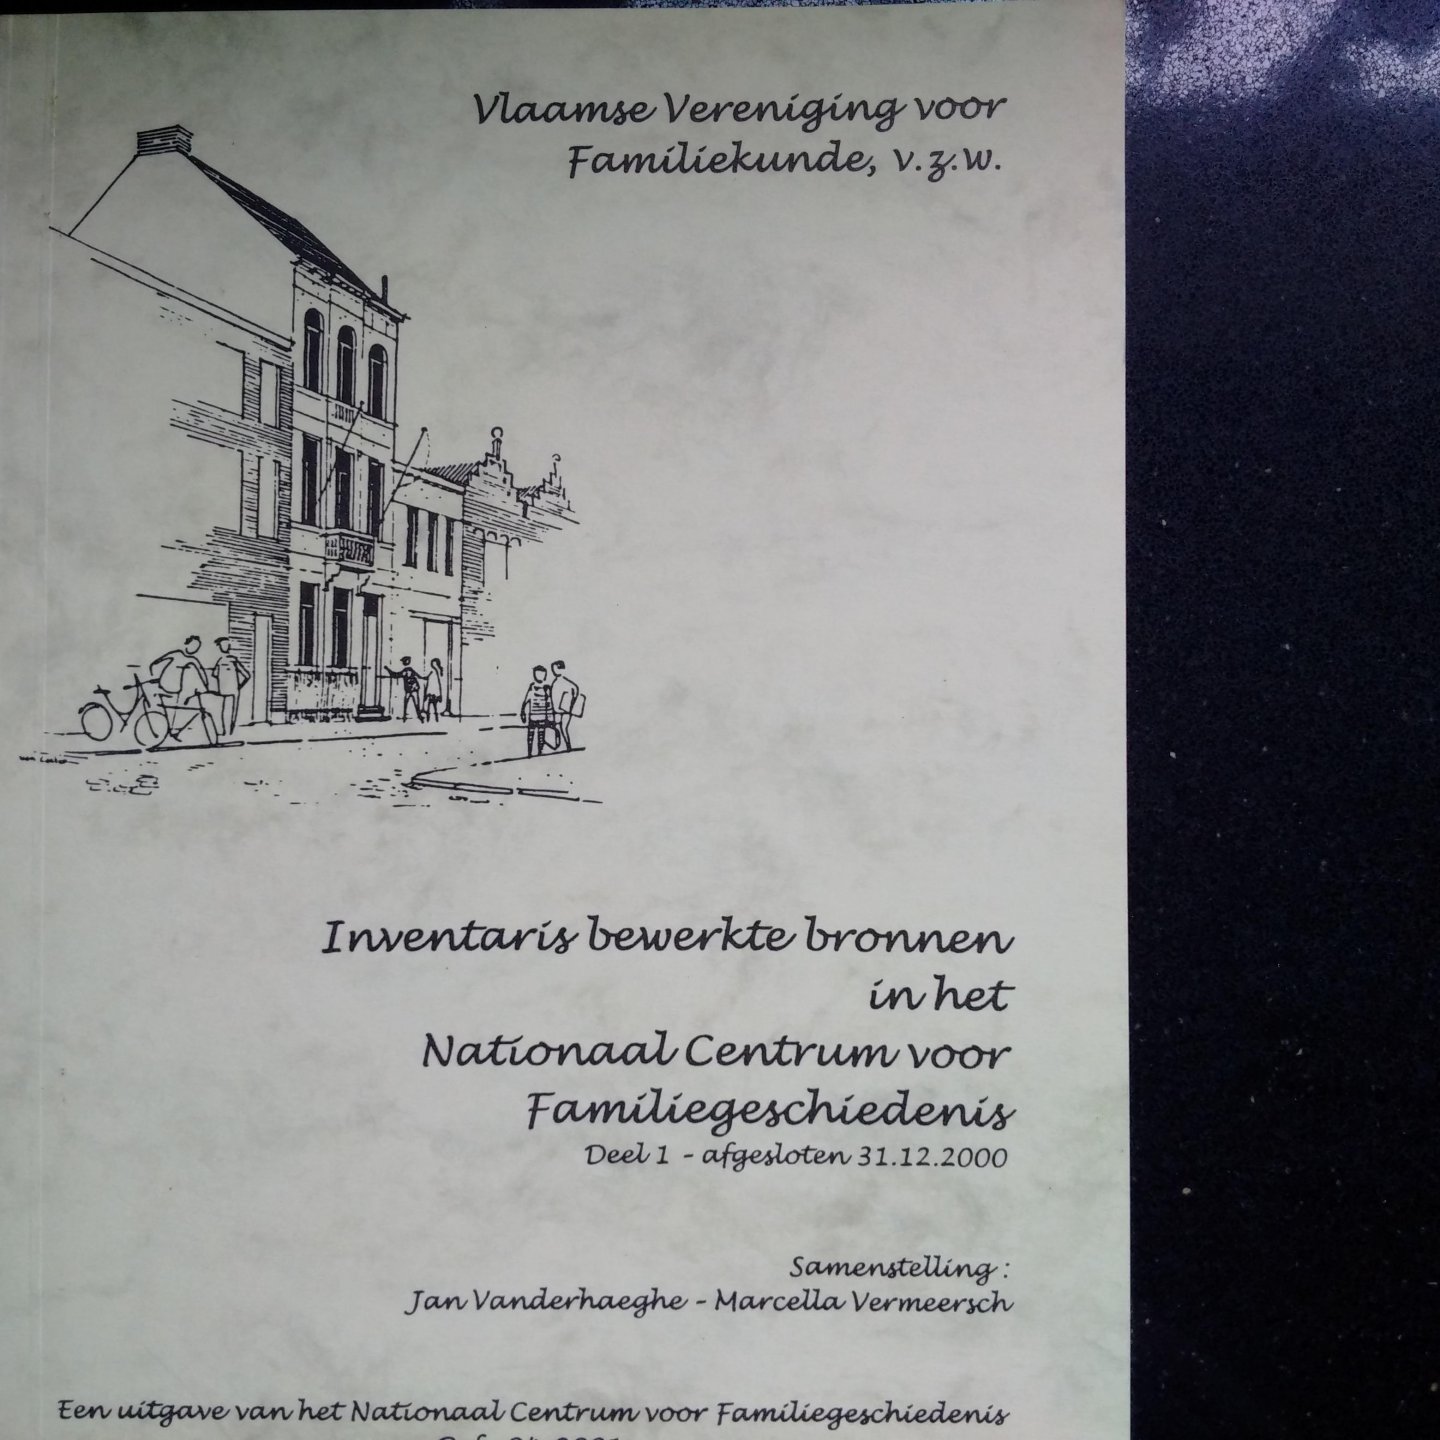 Vanderhaeghe, Jan & Vermeerschm Marcella - Inventaris bewerkte bronnen in het Nationaal Centrum voor Familiegeschiedenis. Deel 1-afgesloten 31-12-2000